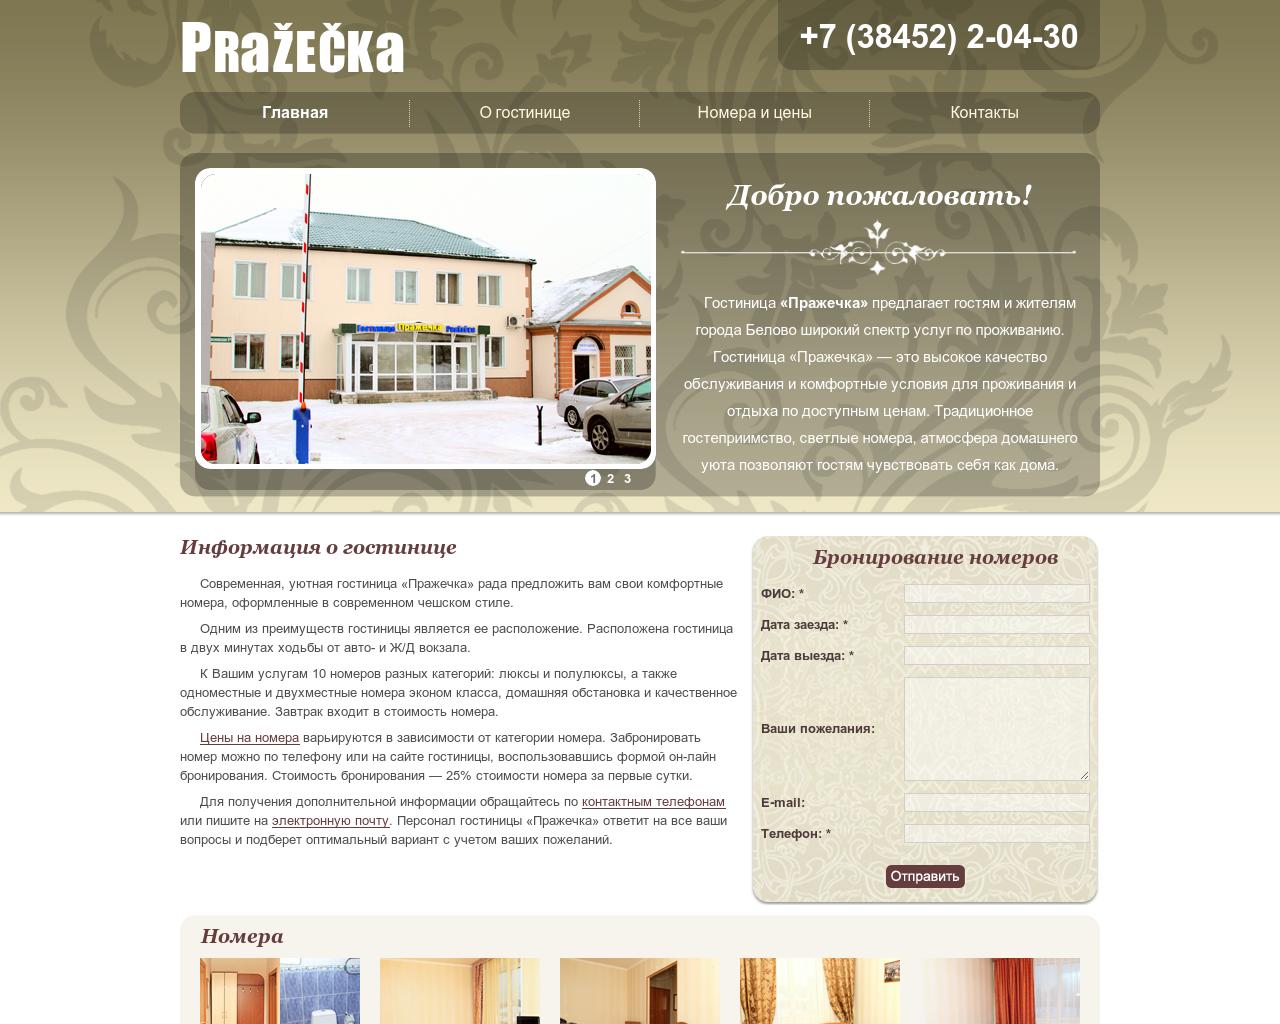 Изображение сайта prazecka-belovo.ru в разрешении 1280x1024